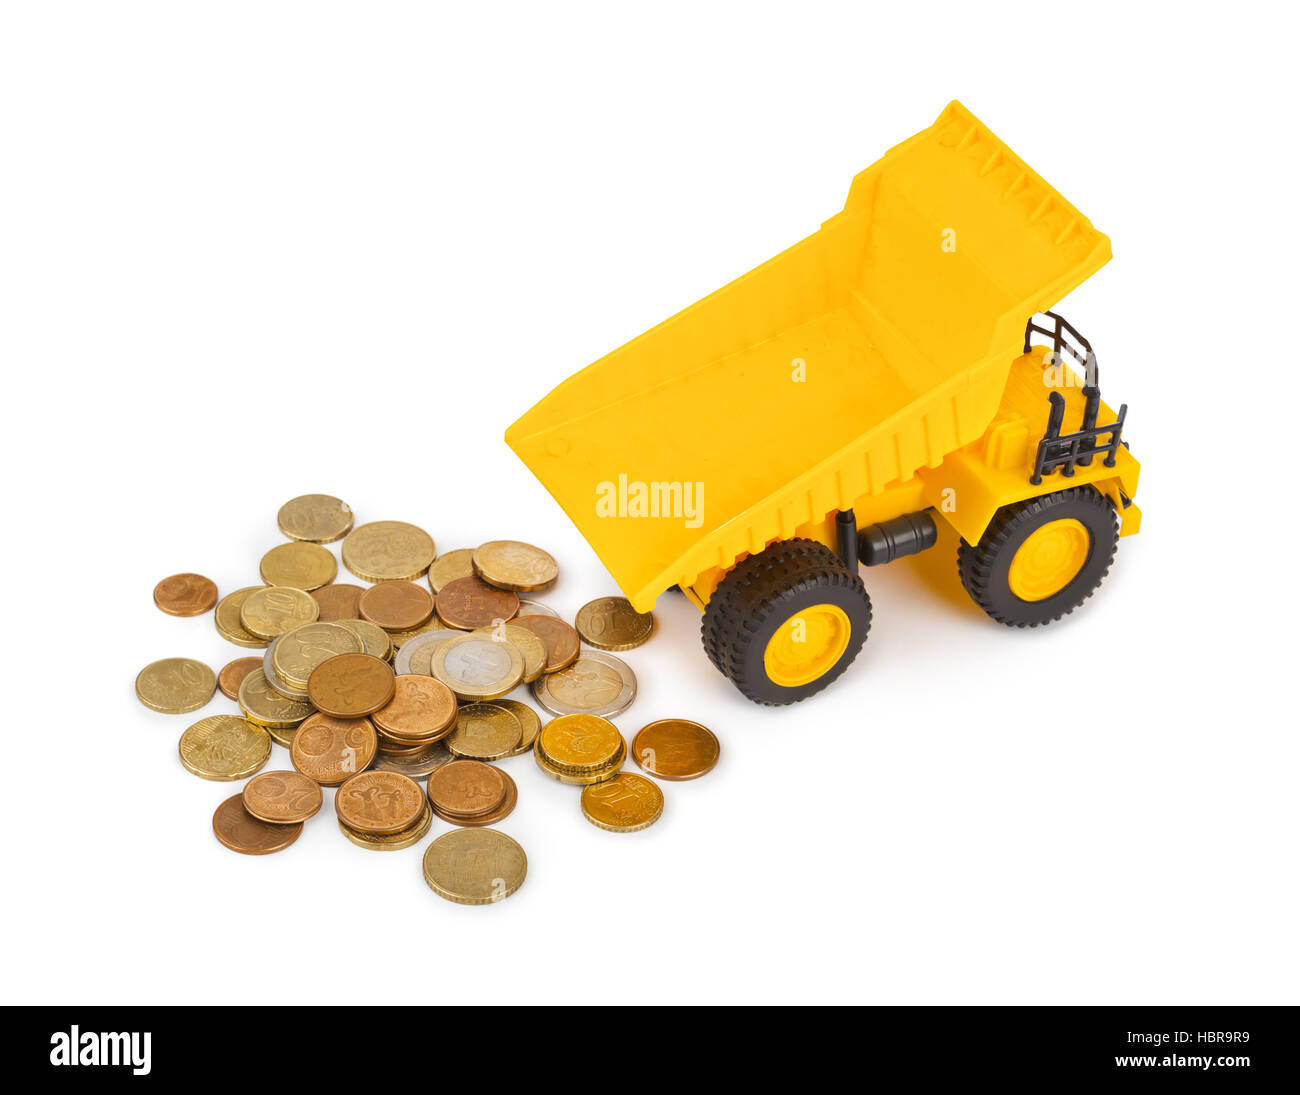 Spielzeug Auto LKW und Geld Münzen Stockfotografie - Alamy